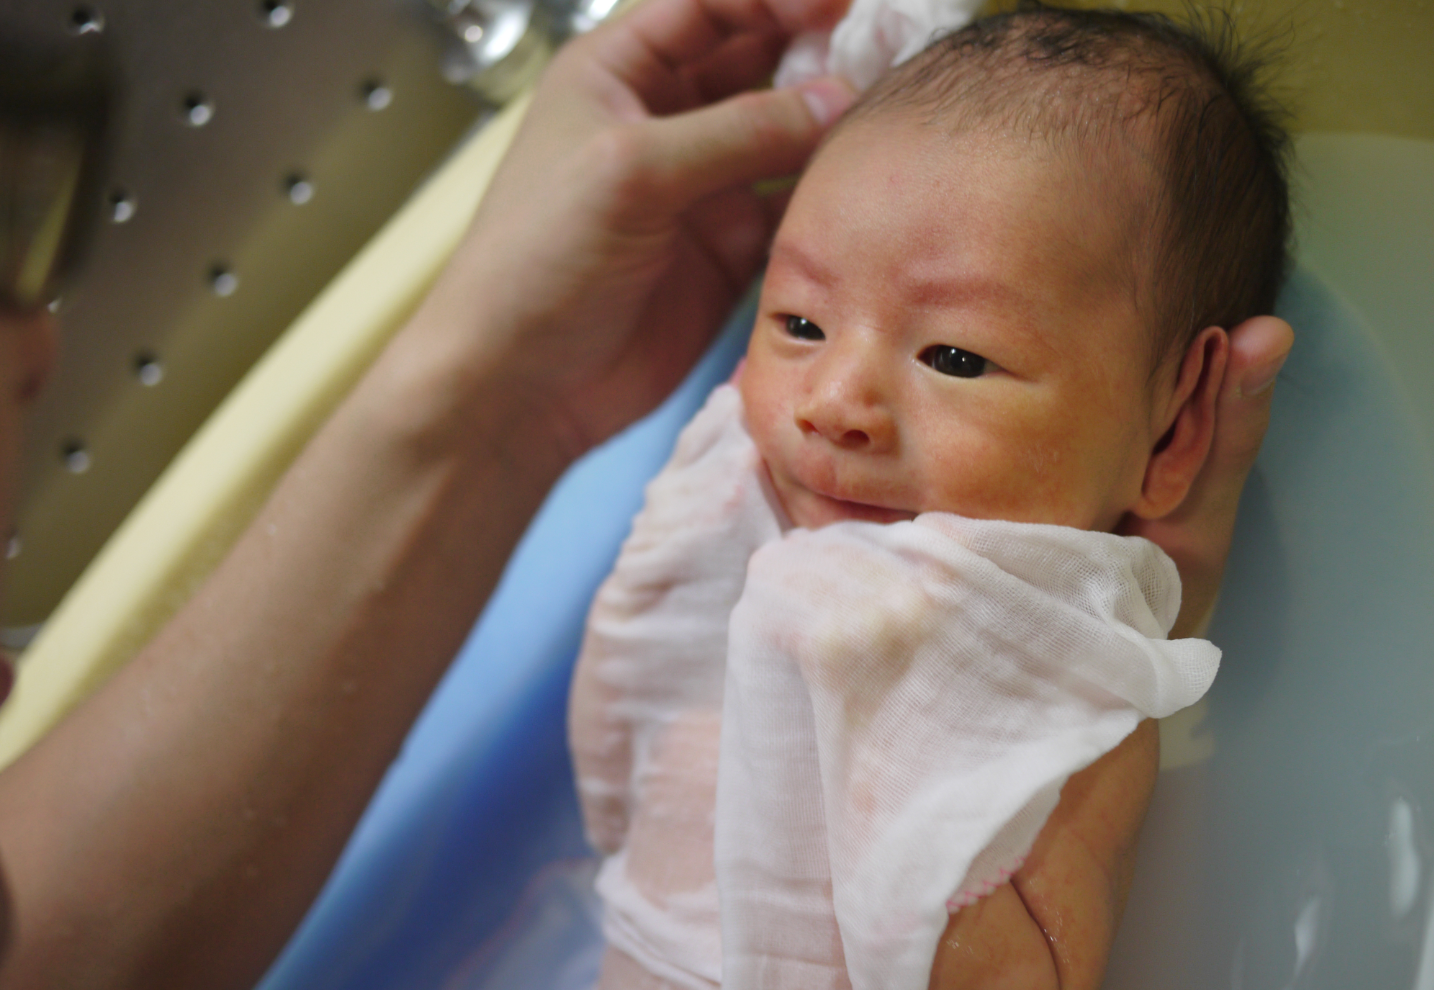 Le Japon discute de la couverture de l’accouchement par l’assurance maladie